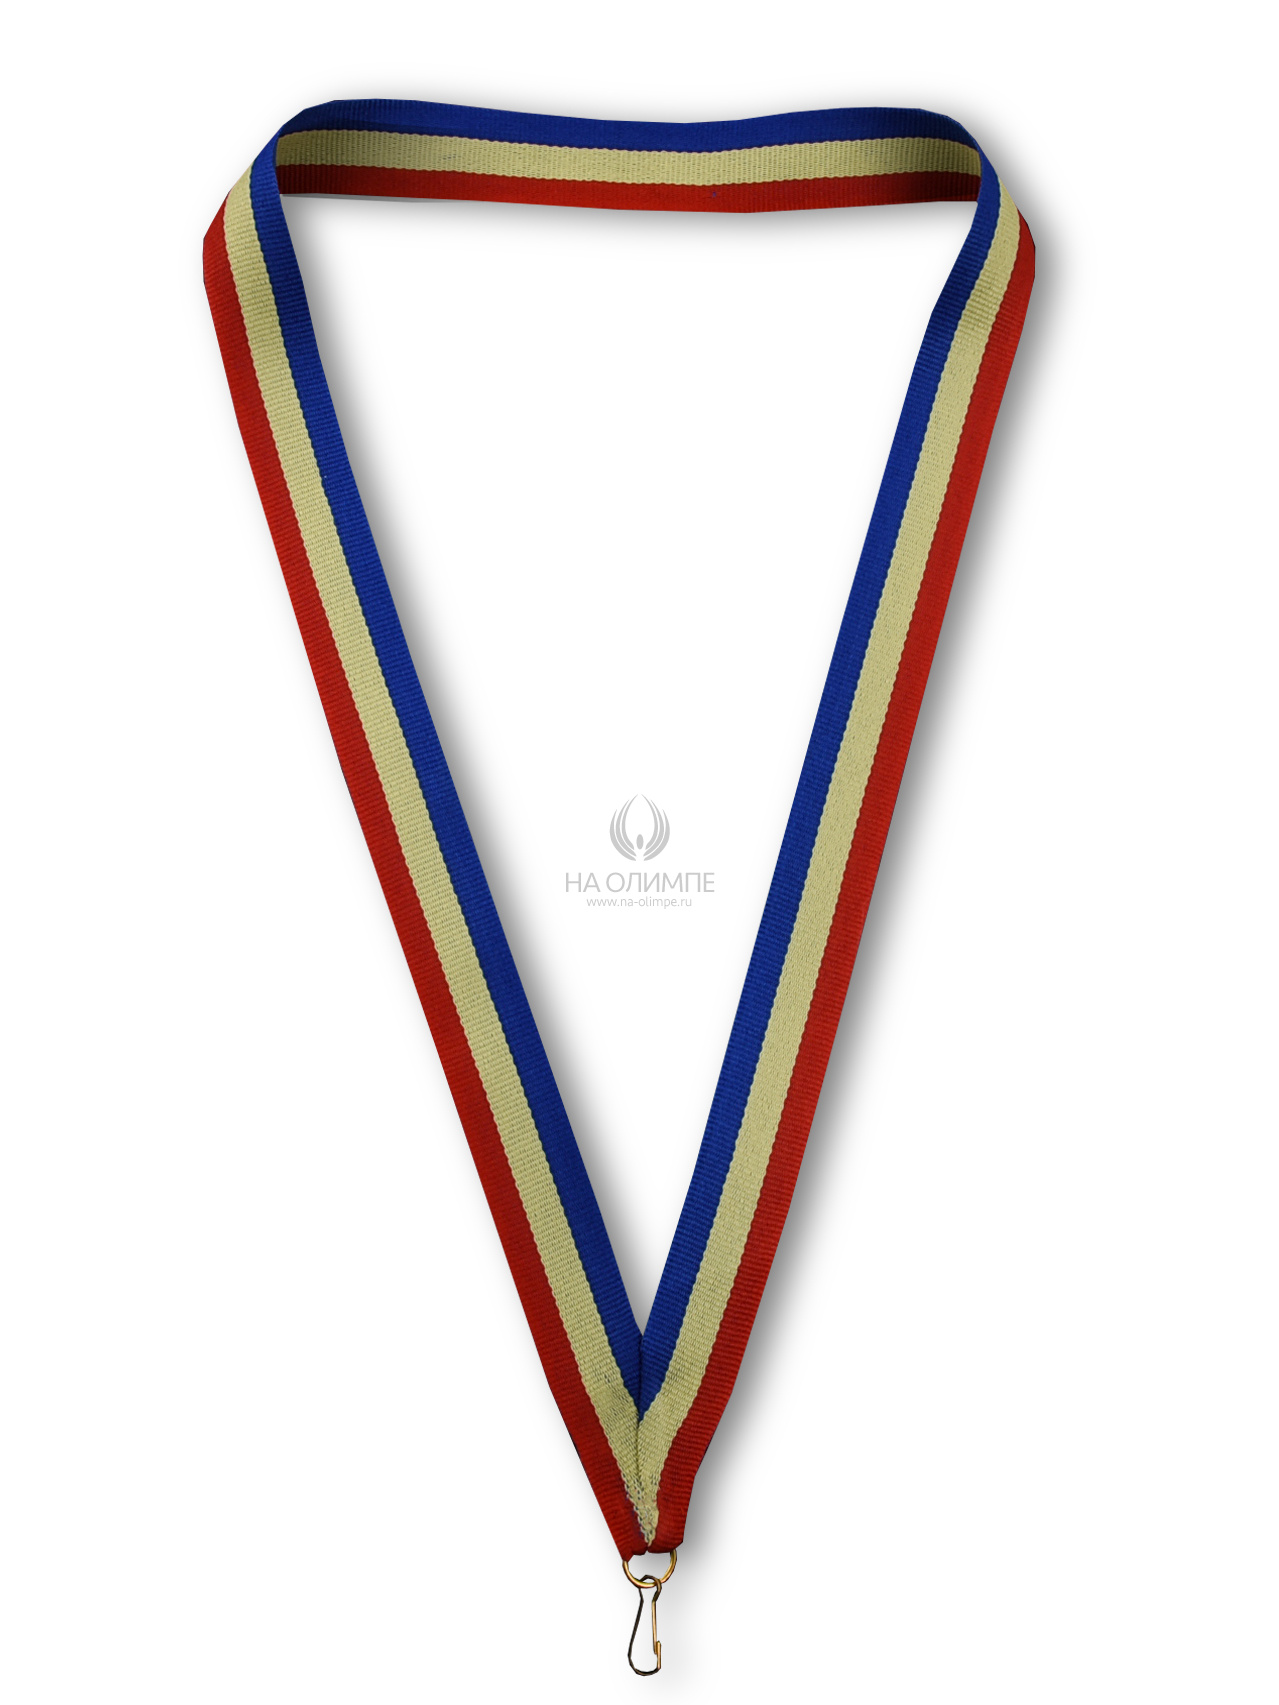 Лента для медали (Ростовская обл.), ширина ленты 22 мм